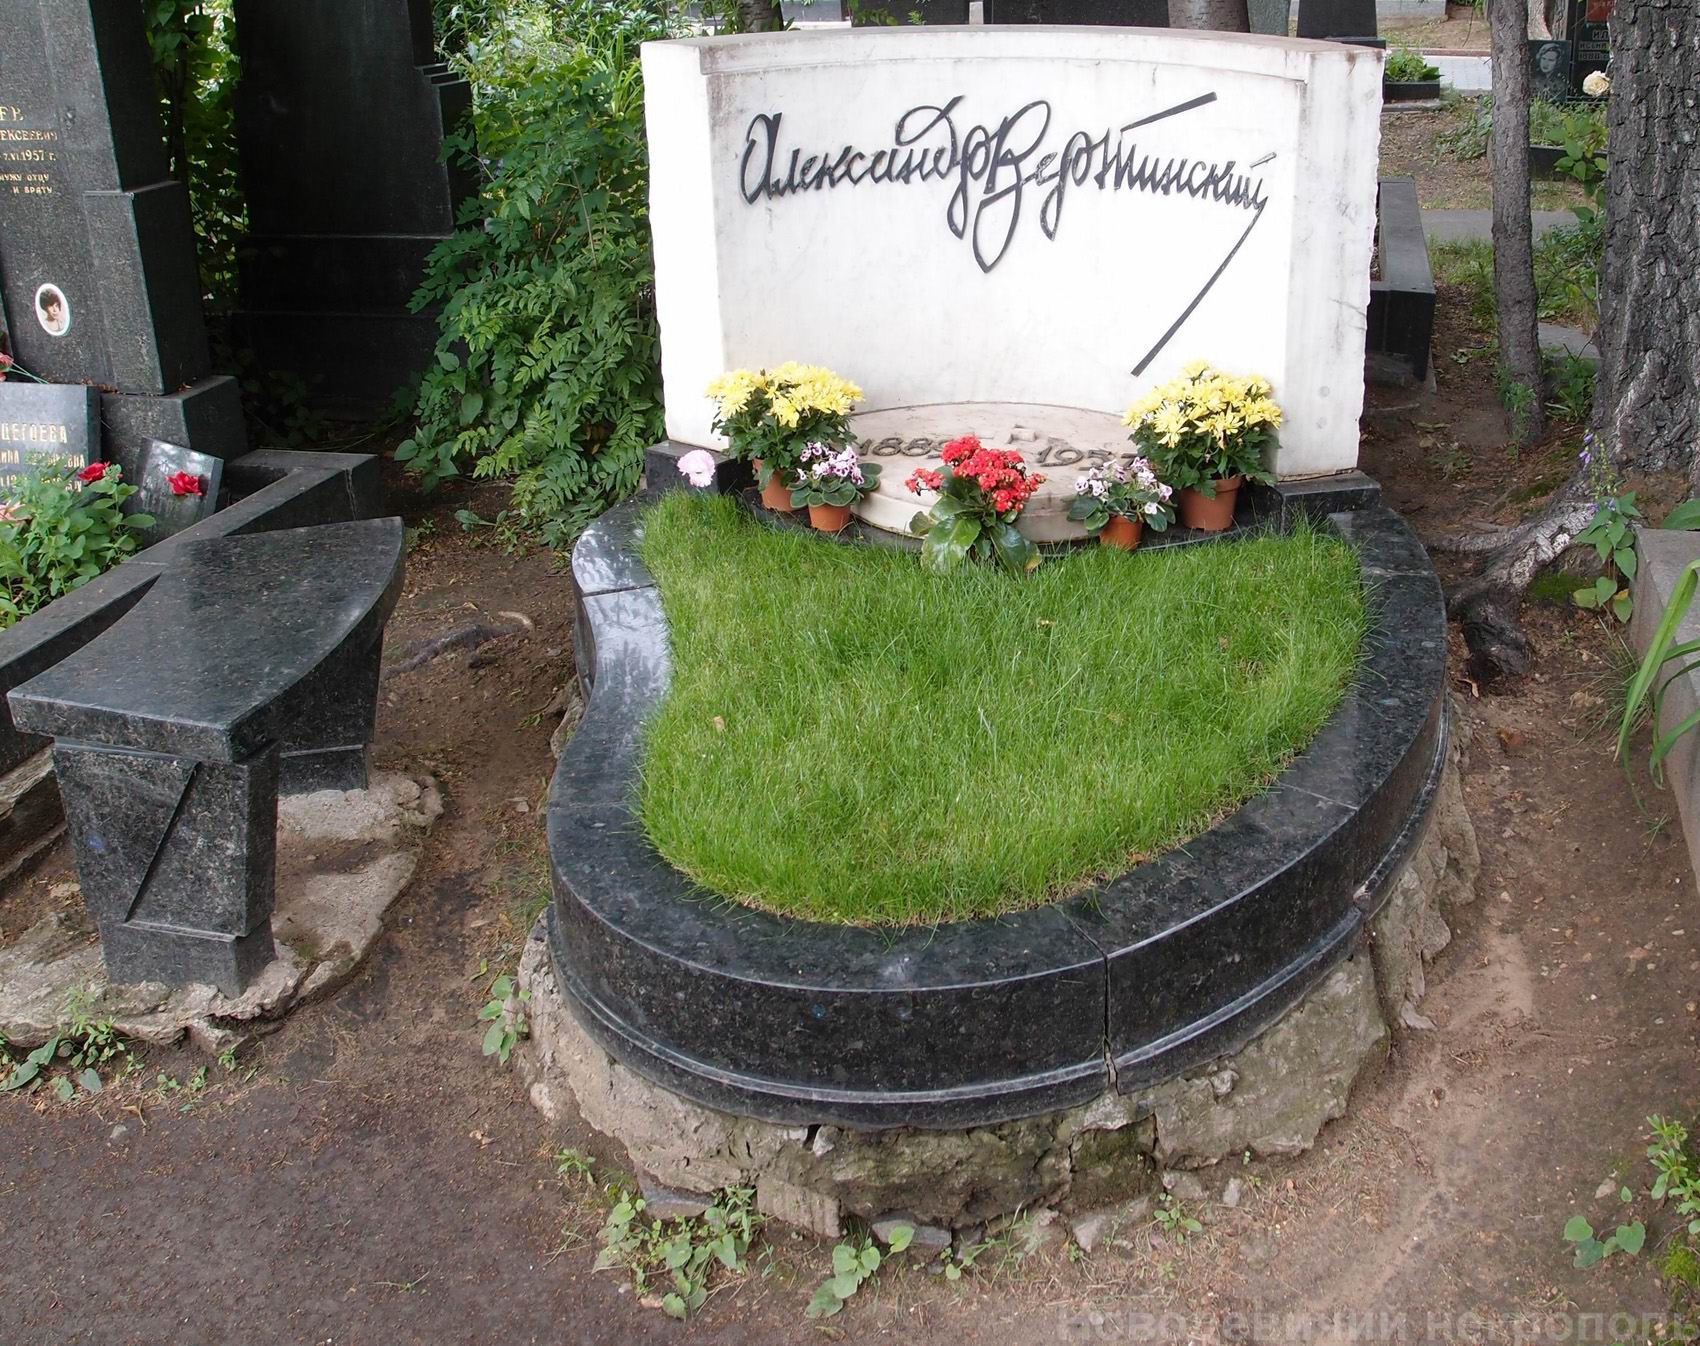 Памятник на могиле Вертинского А.Н. (1889–1957), арх. Е.Розенблюм, В.Быков, на Новодевичьем кладбище (5–5–6). Нажмите левую кнопку мыши, чтобы увидеть фрагмент памятника.